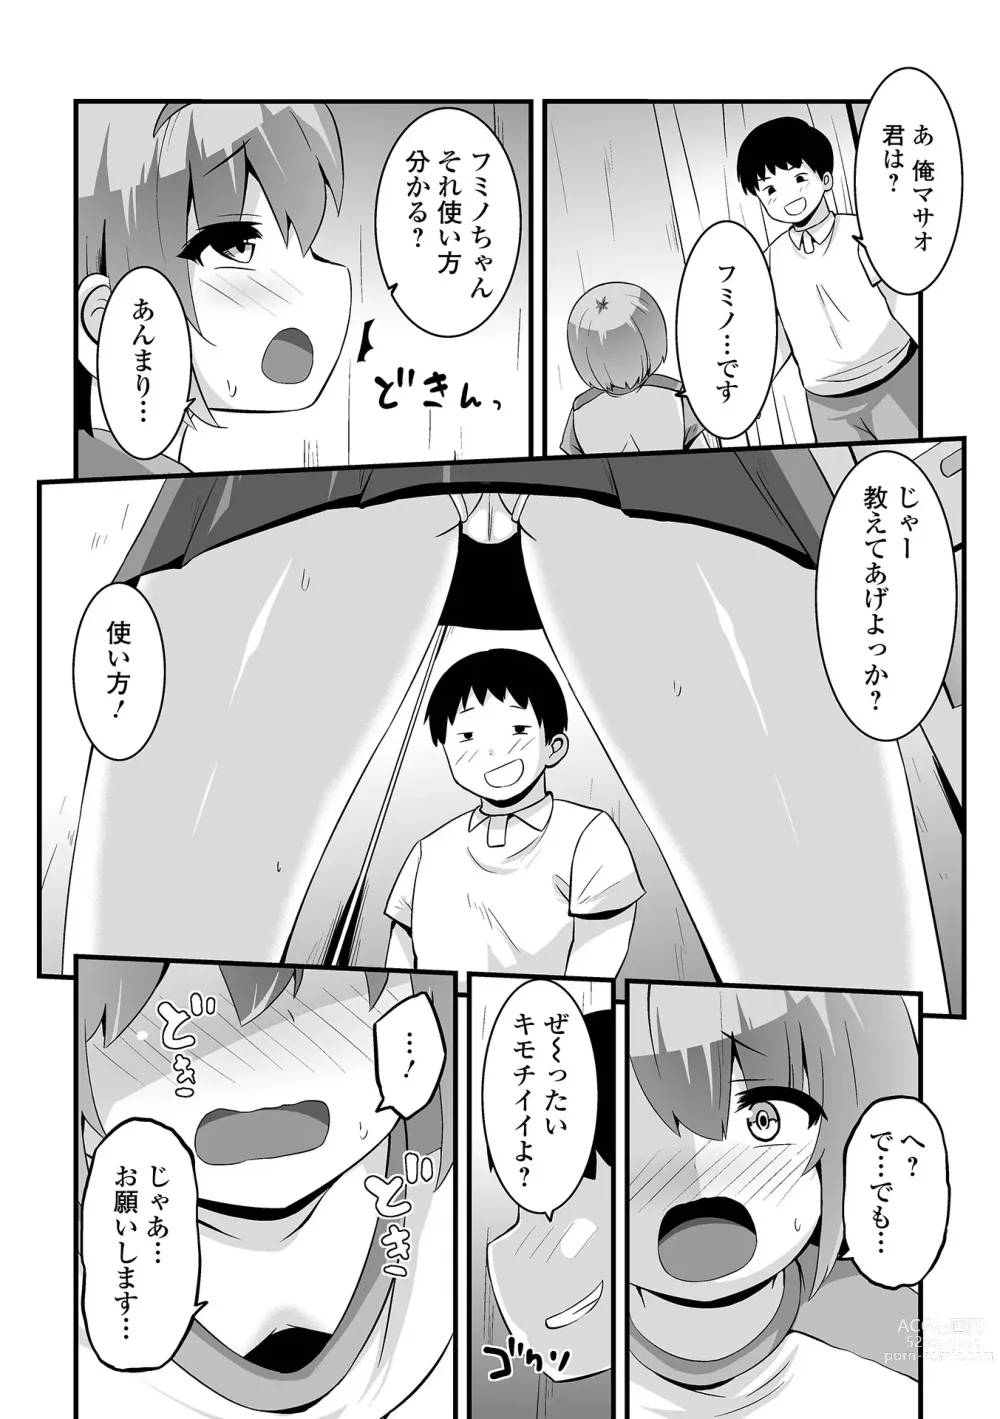 Page 4 of manga Ona asobi